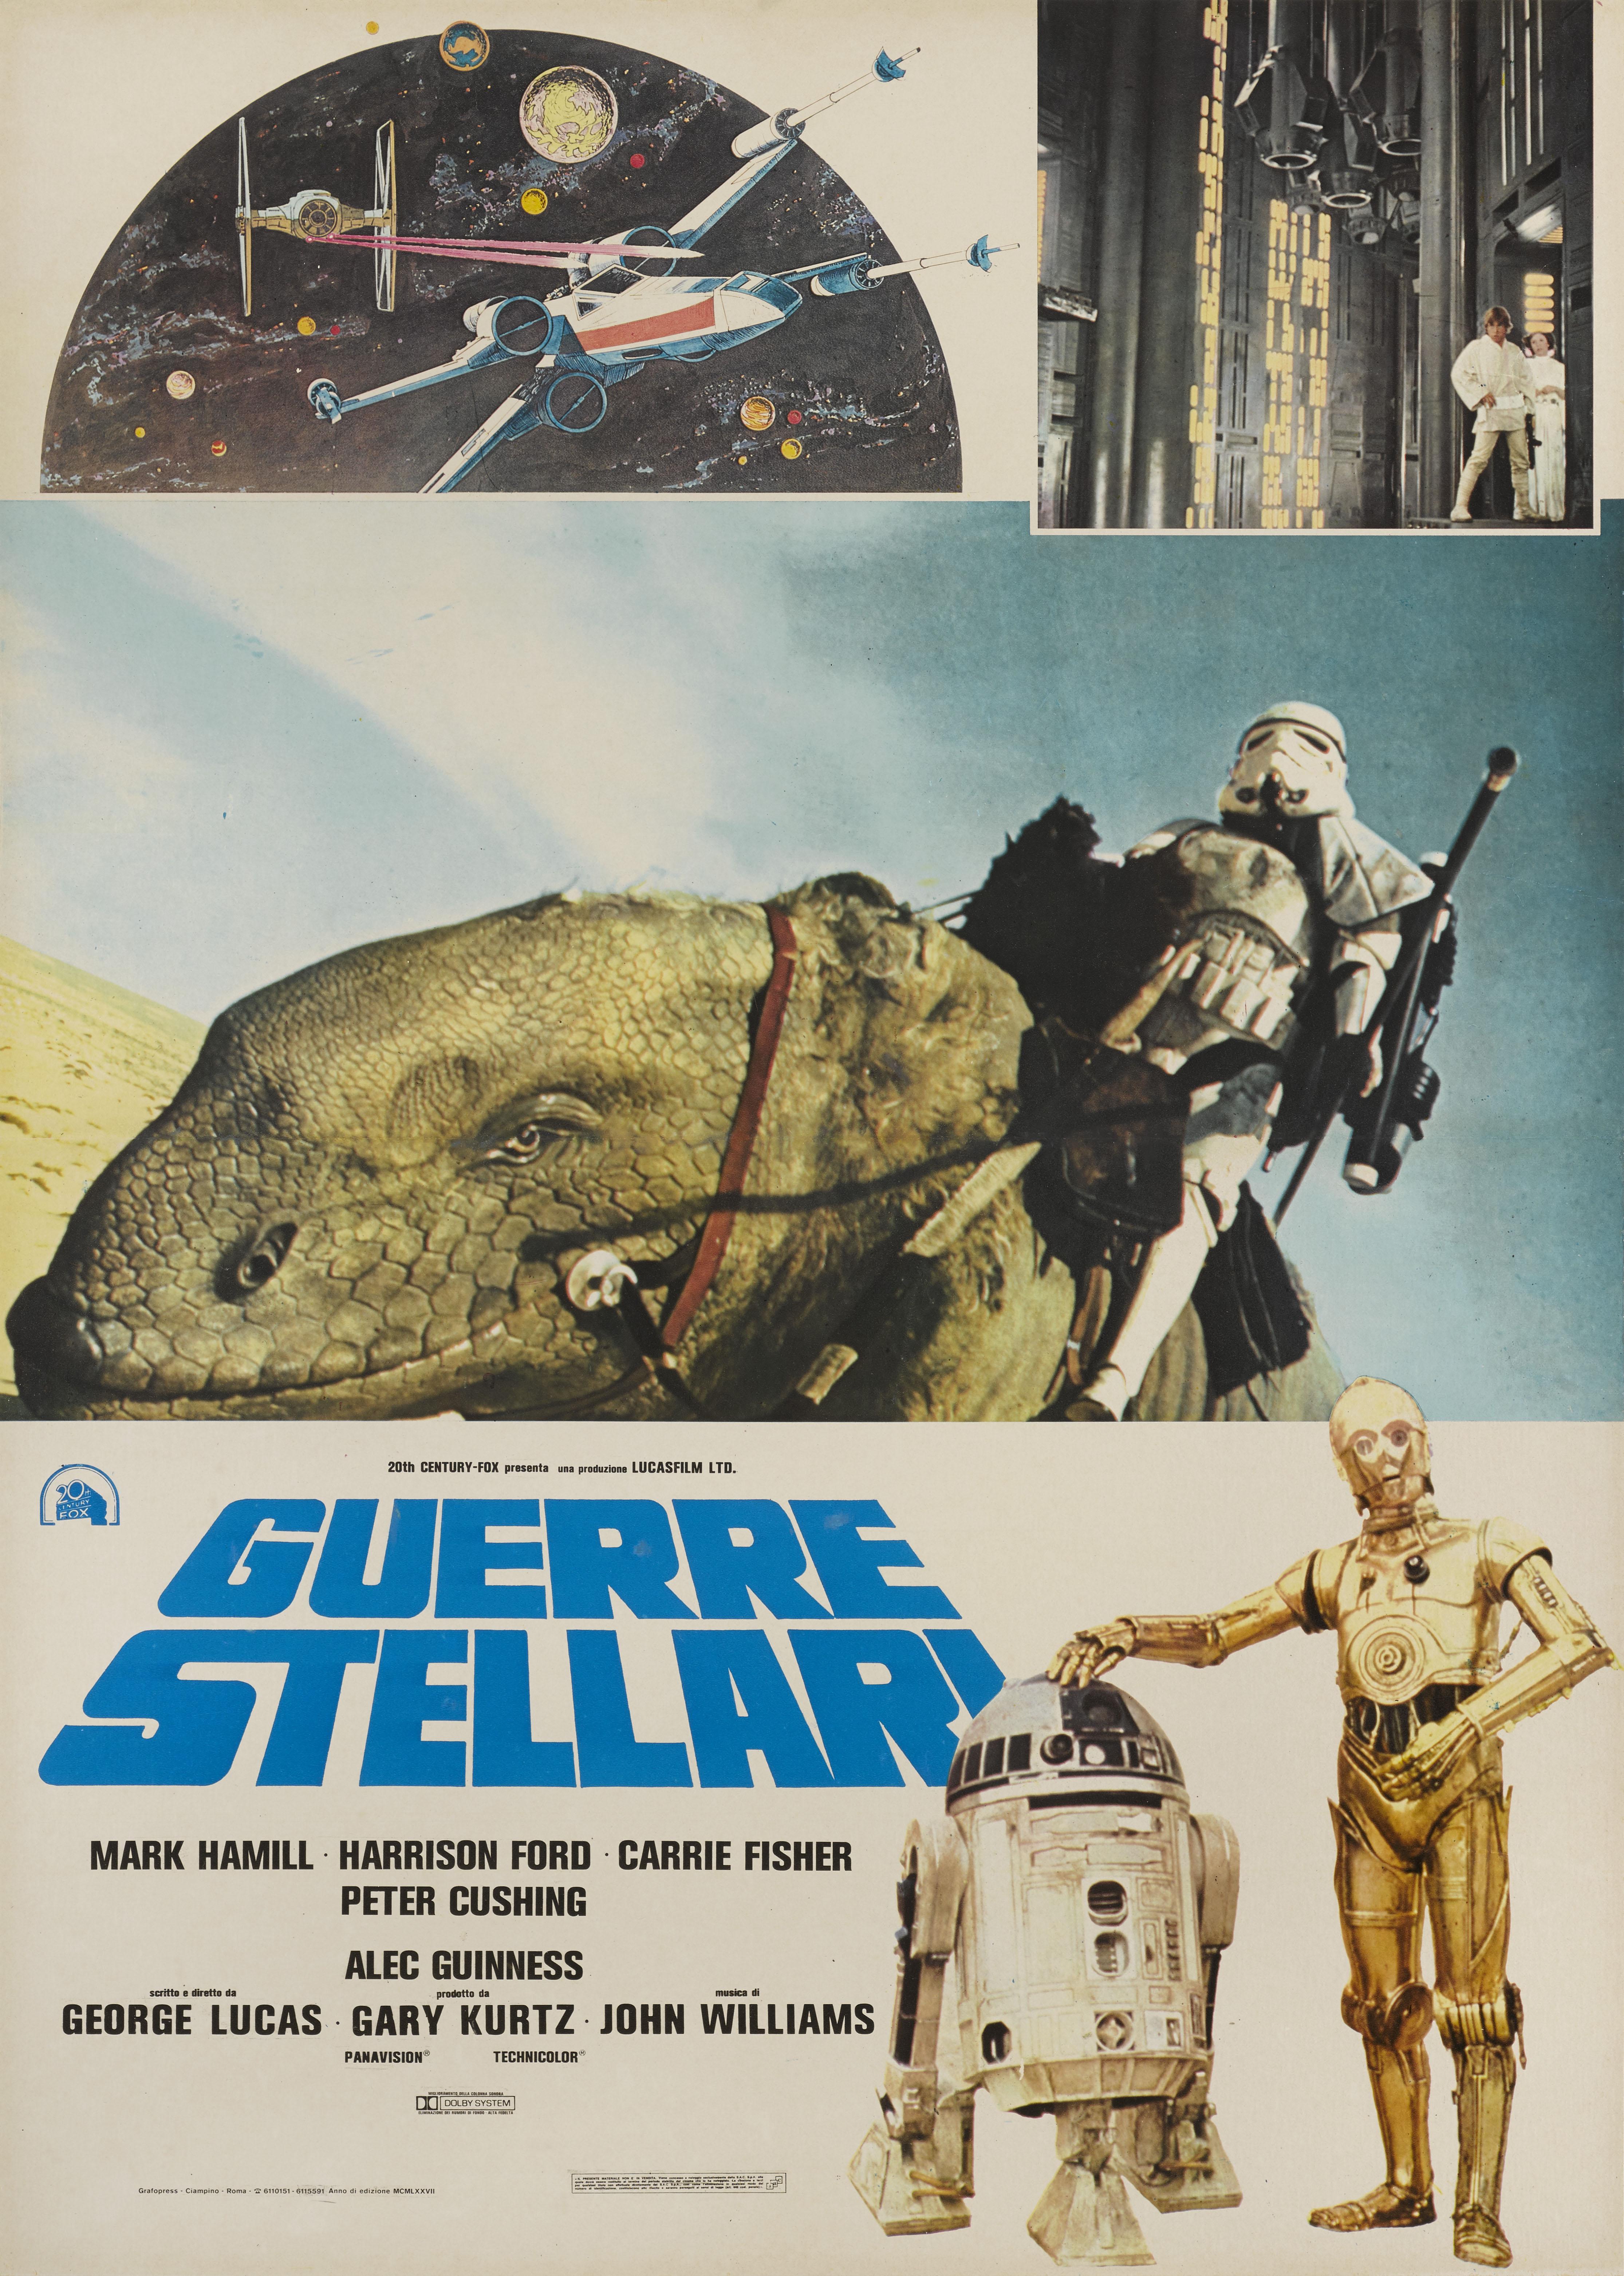 Originales italienisches Filmplakat für Star Wars 1977.
Der Film wurde unter der Regie von George Lucas gedreht und mit Mark Hamill, Harrison Ford und Carrie Fisher besetzt.
Dieses Poster hat einen Leinenrücken und wird aufgerollt in einem